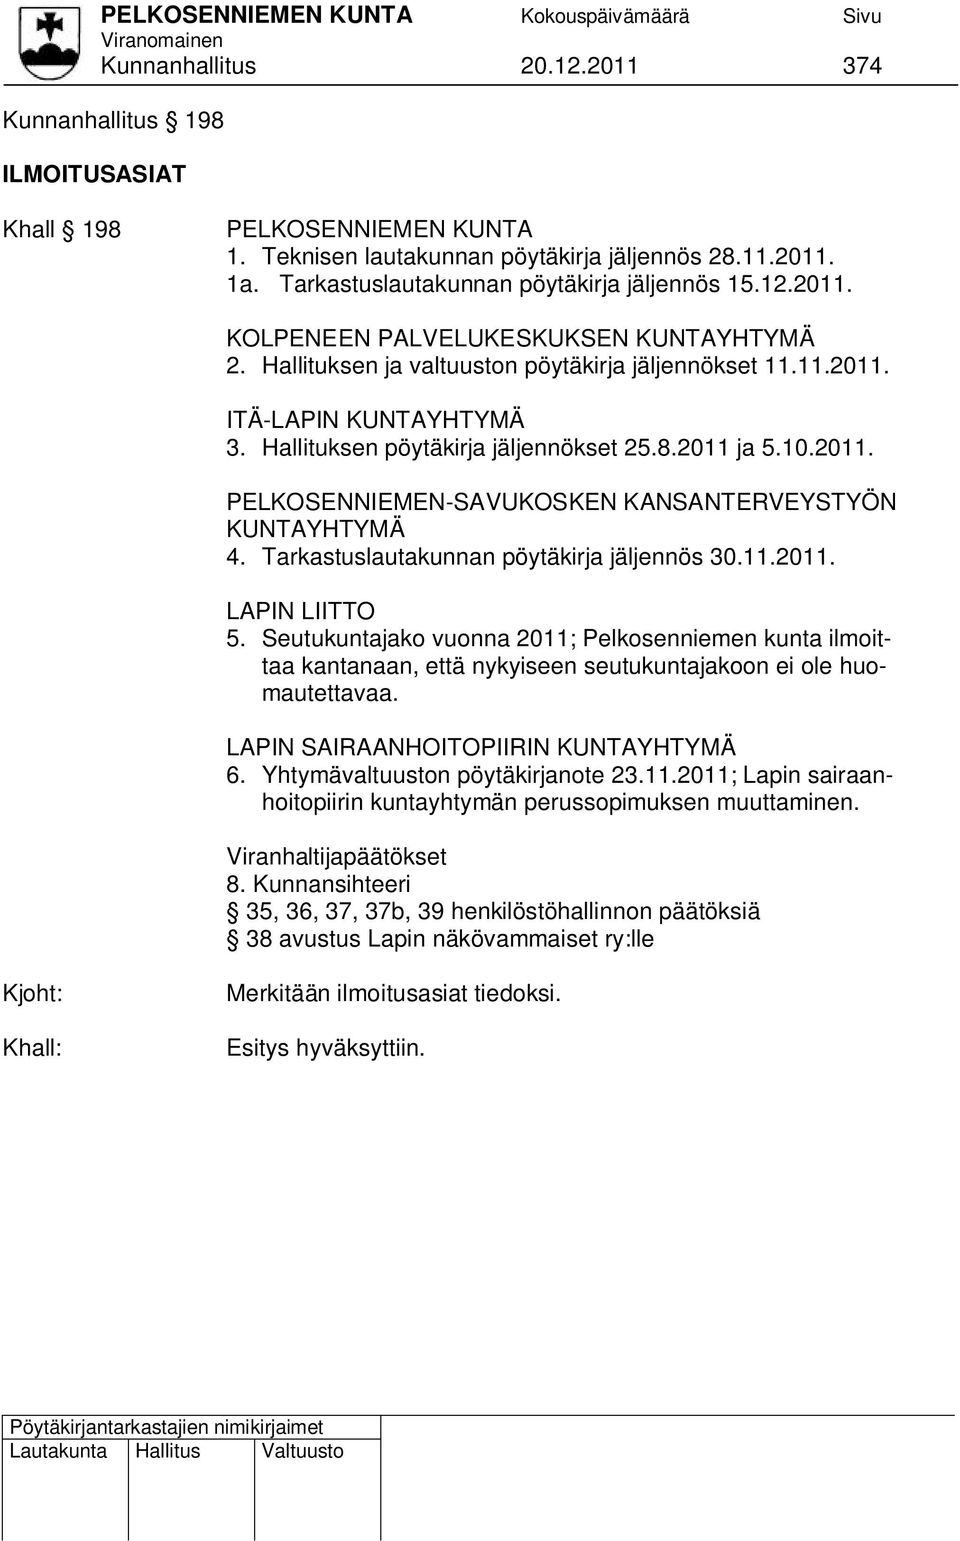 Tarkastuslautakunnan pöytäkirja jäljennös 30.11.2011. LAPIN LIITTO 5. Seutukuntajako vuonna 2011; Pelkosenniemen kunta ilmoittaa kantanaan, että nykyiseen seutukuntajakoon ei ole huomautettavaa.